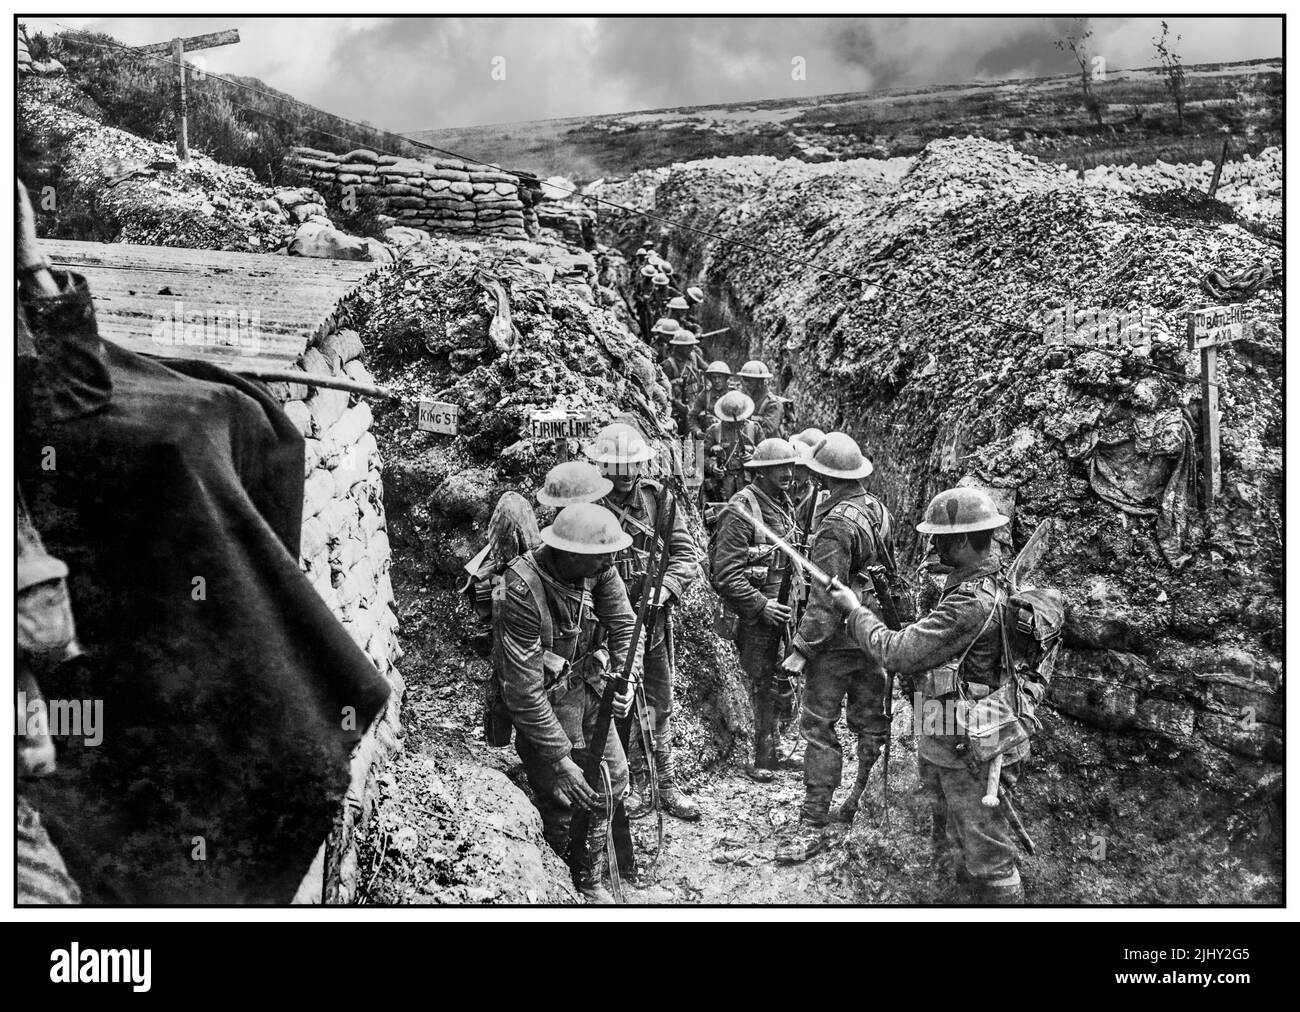 WW1 Schlacht an der Somme : Britische Soldaten des Bataillons von 1., die Lancashire Fusiliers, die vor dem Angriff auf Beaumont Hamel Bajonette fixierten. Schlacht an der Somme. Soldaten trugen ‘Kampfbefehl’, mit dem Haversack anstelle des Rudel und mit dem gerollten Erdblatt, das am Gürtel unter dem Mistkinn befestigt war, der Rationen enthielt. Der Offizier im Vordergrund (rechts) trägt die Uniform anderer Ränge, um weniger auffällig zu sein. Westfront Weltkrieg 1 Erster Weltkrieg Der Große Krieg Stockfoto